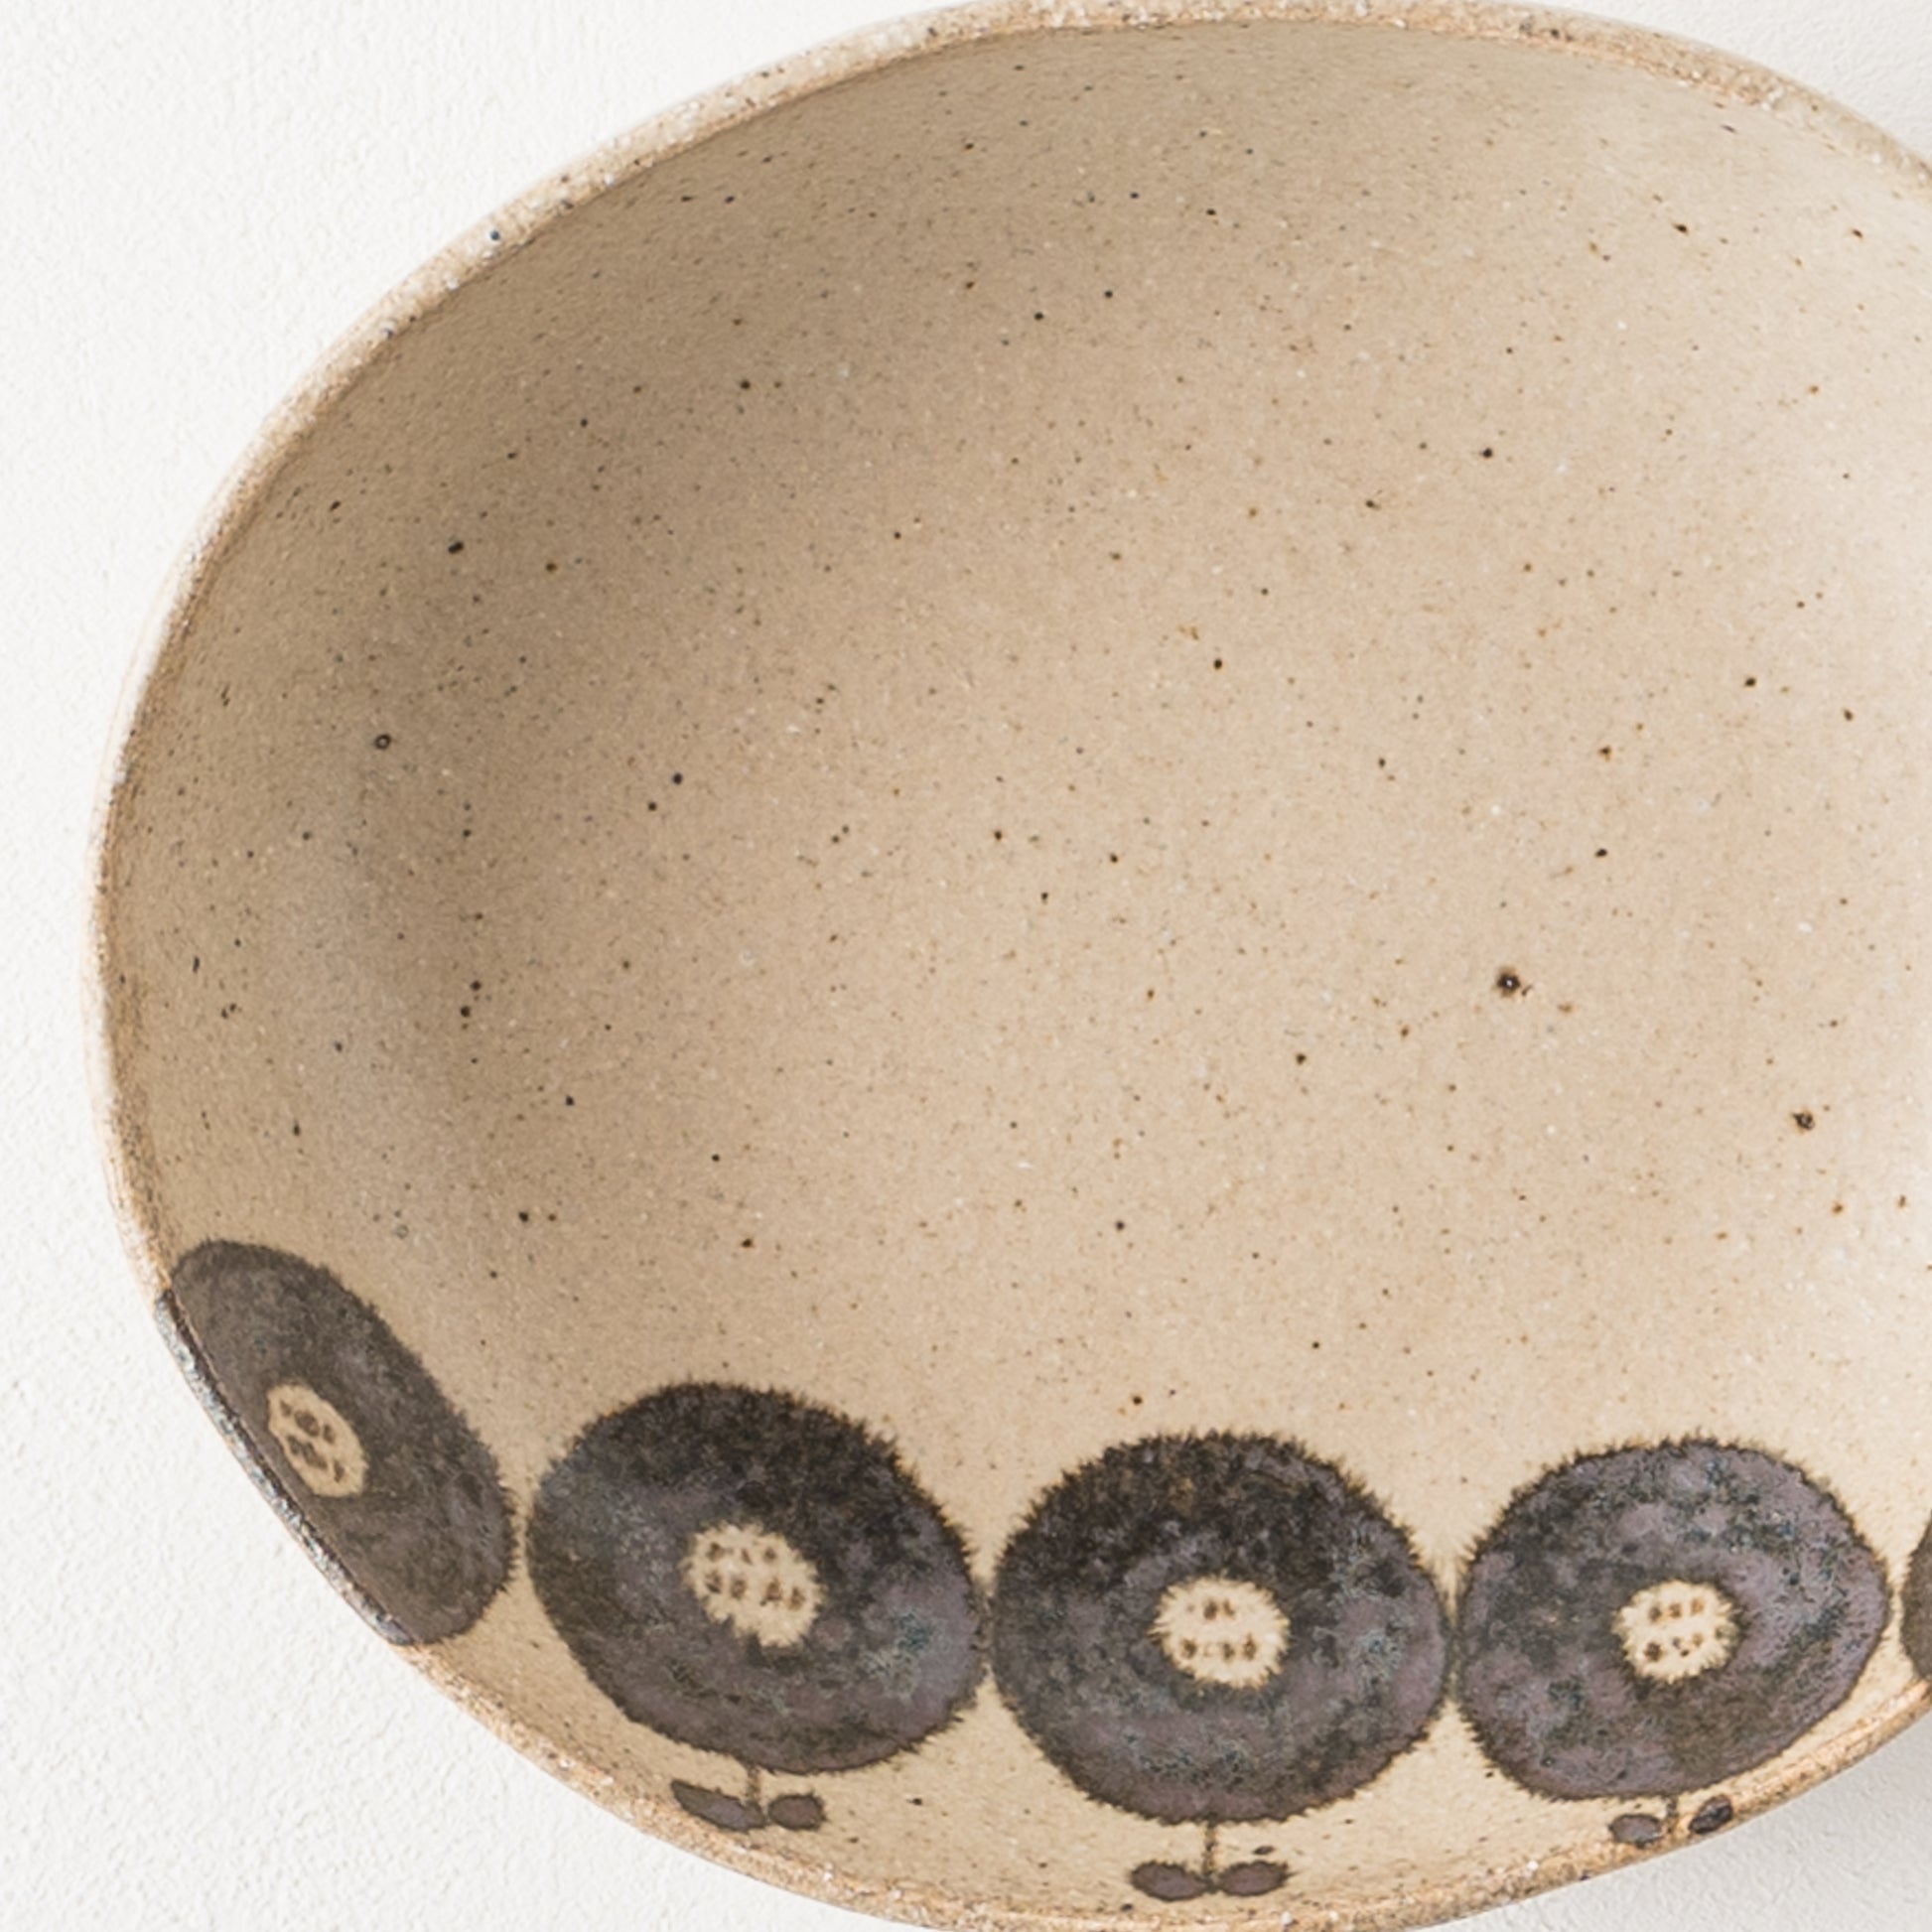 ぼんやりとしたお花模様に心が安らぐ岡村朝子さんの楕円皿